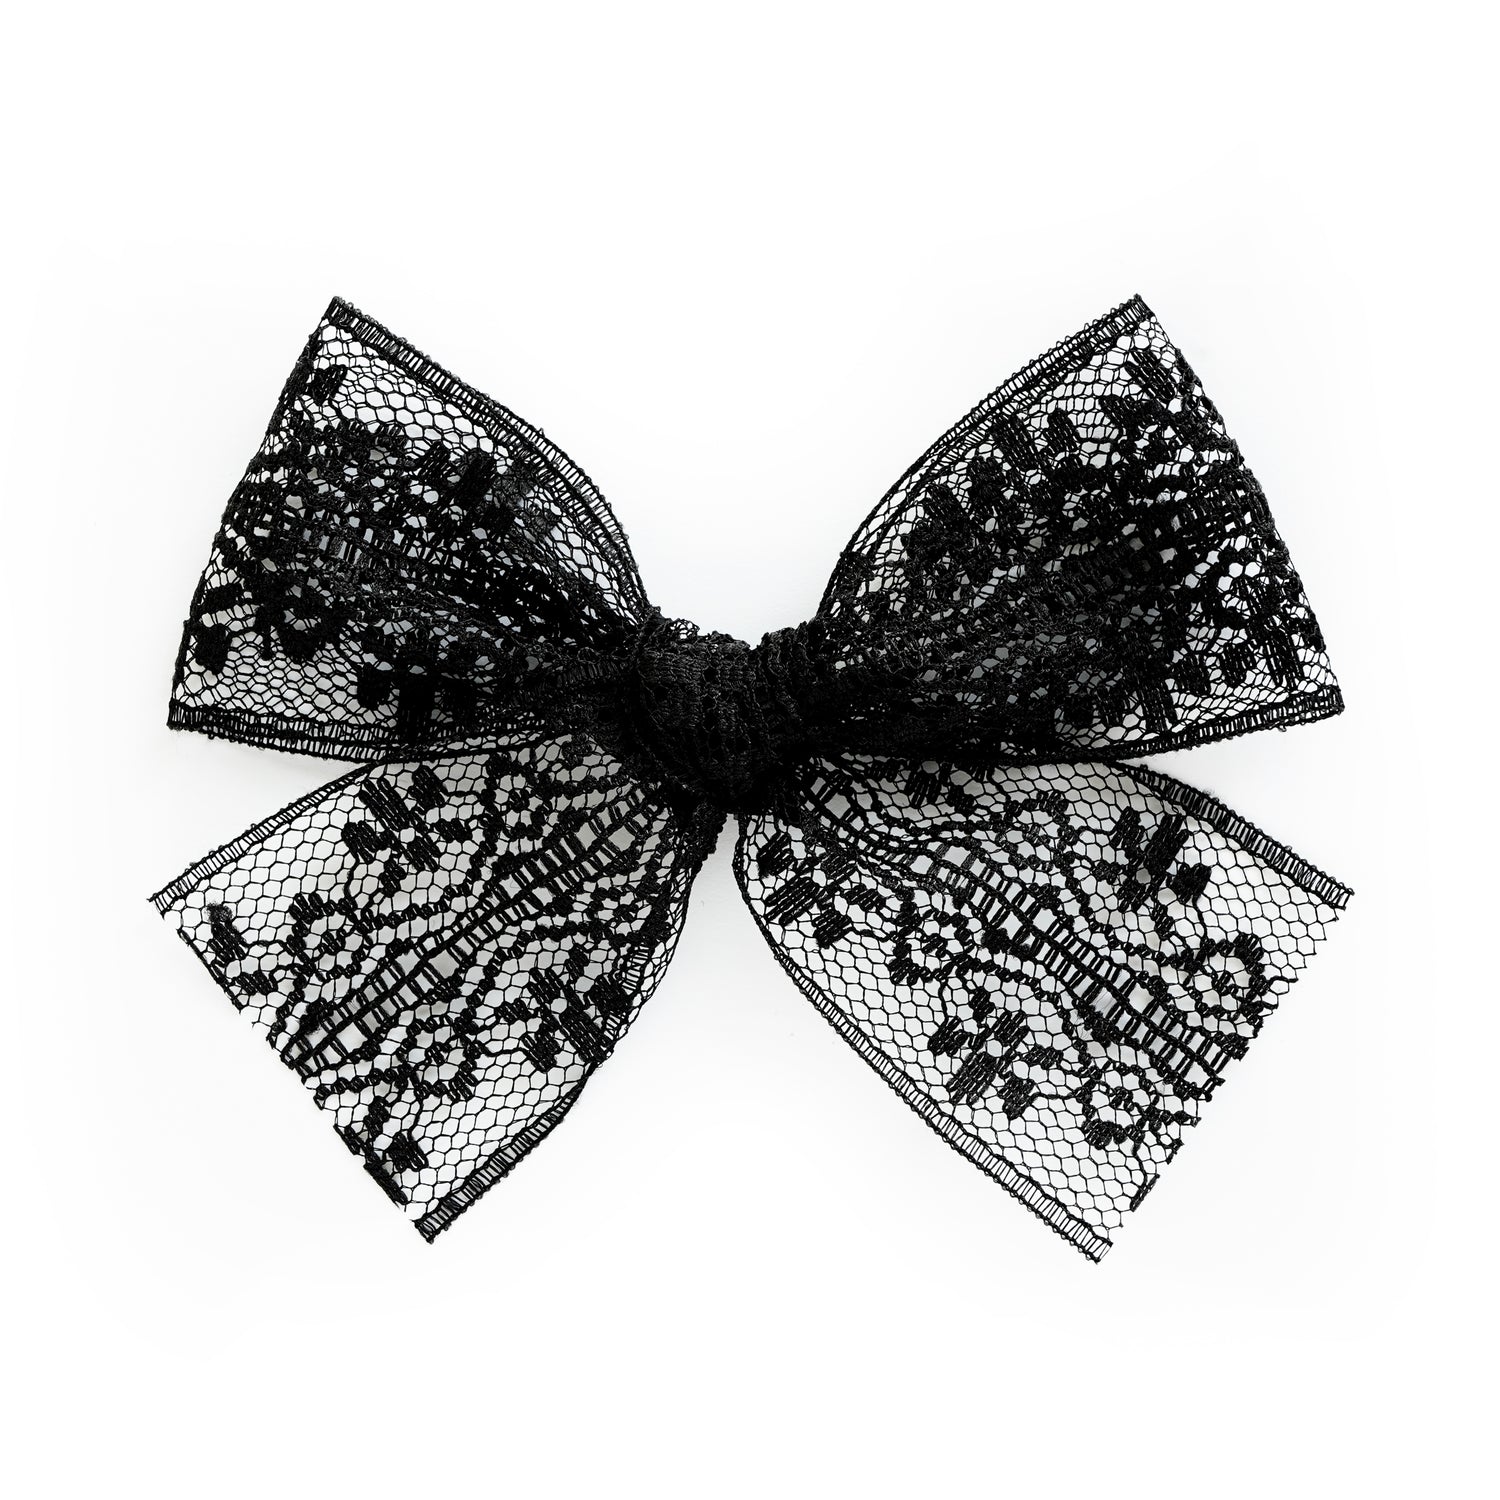 6 x 10 Yd Black Lace Ribbon [LS151-89] - $9.99 